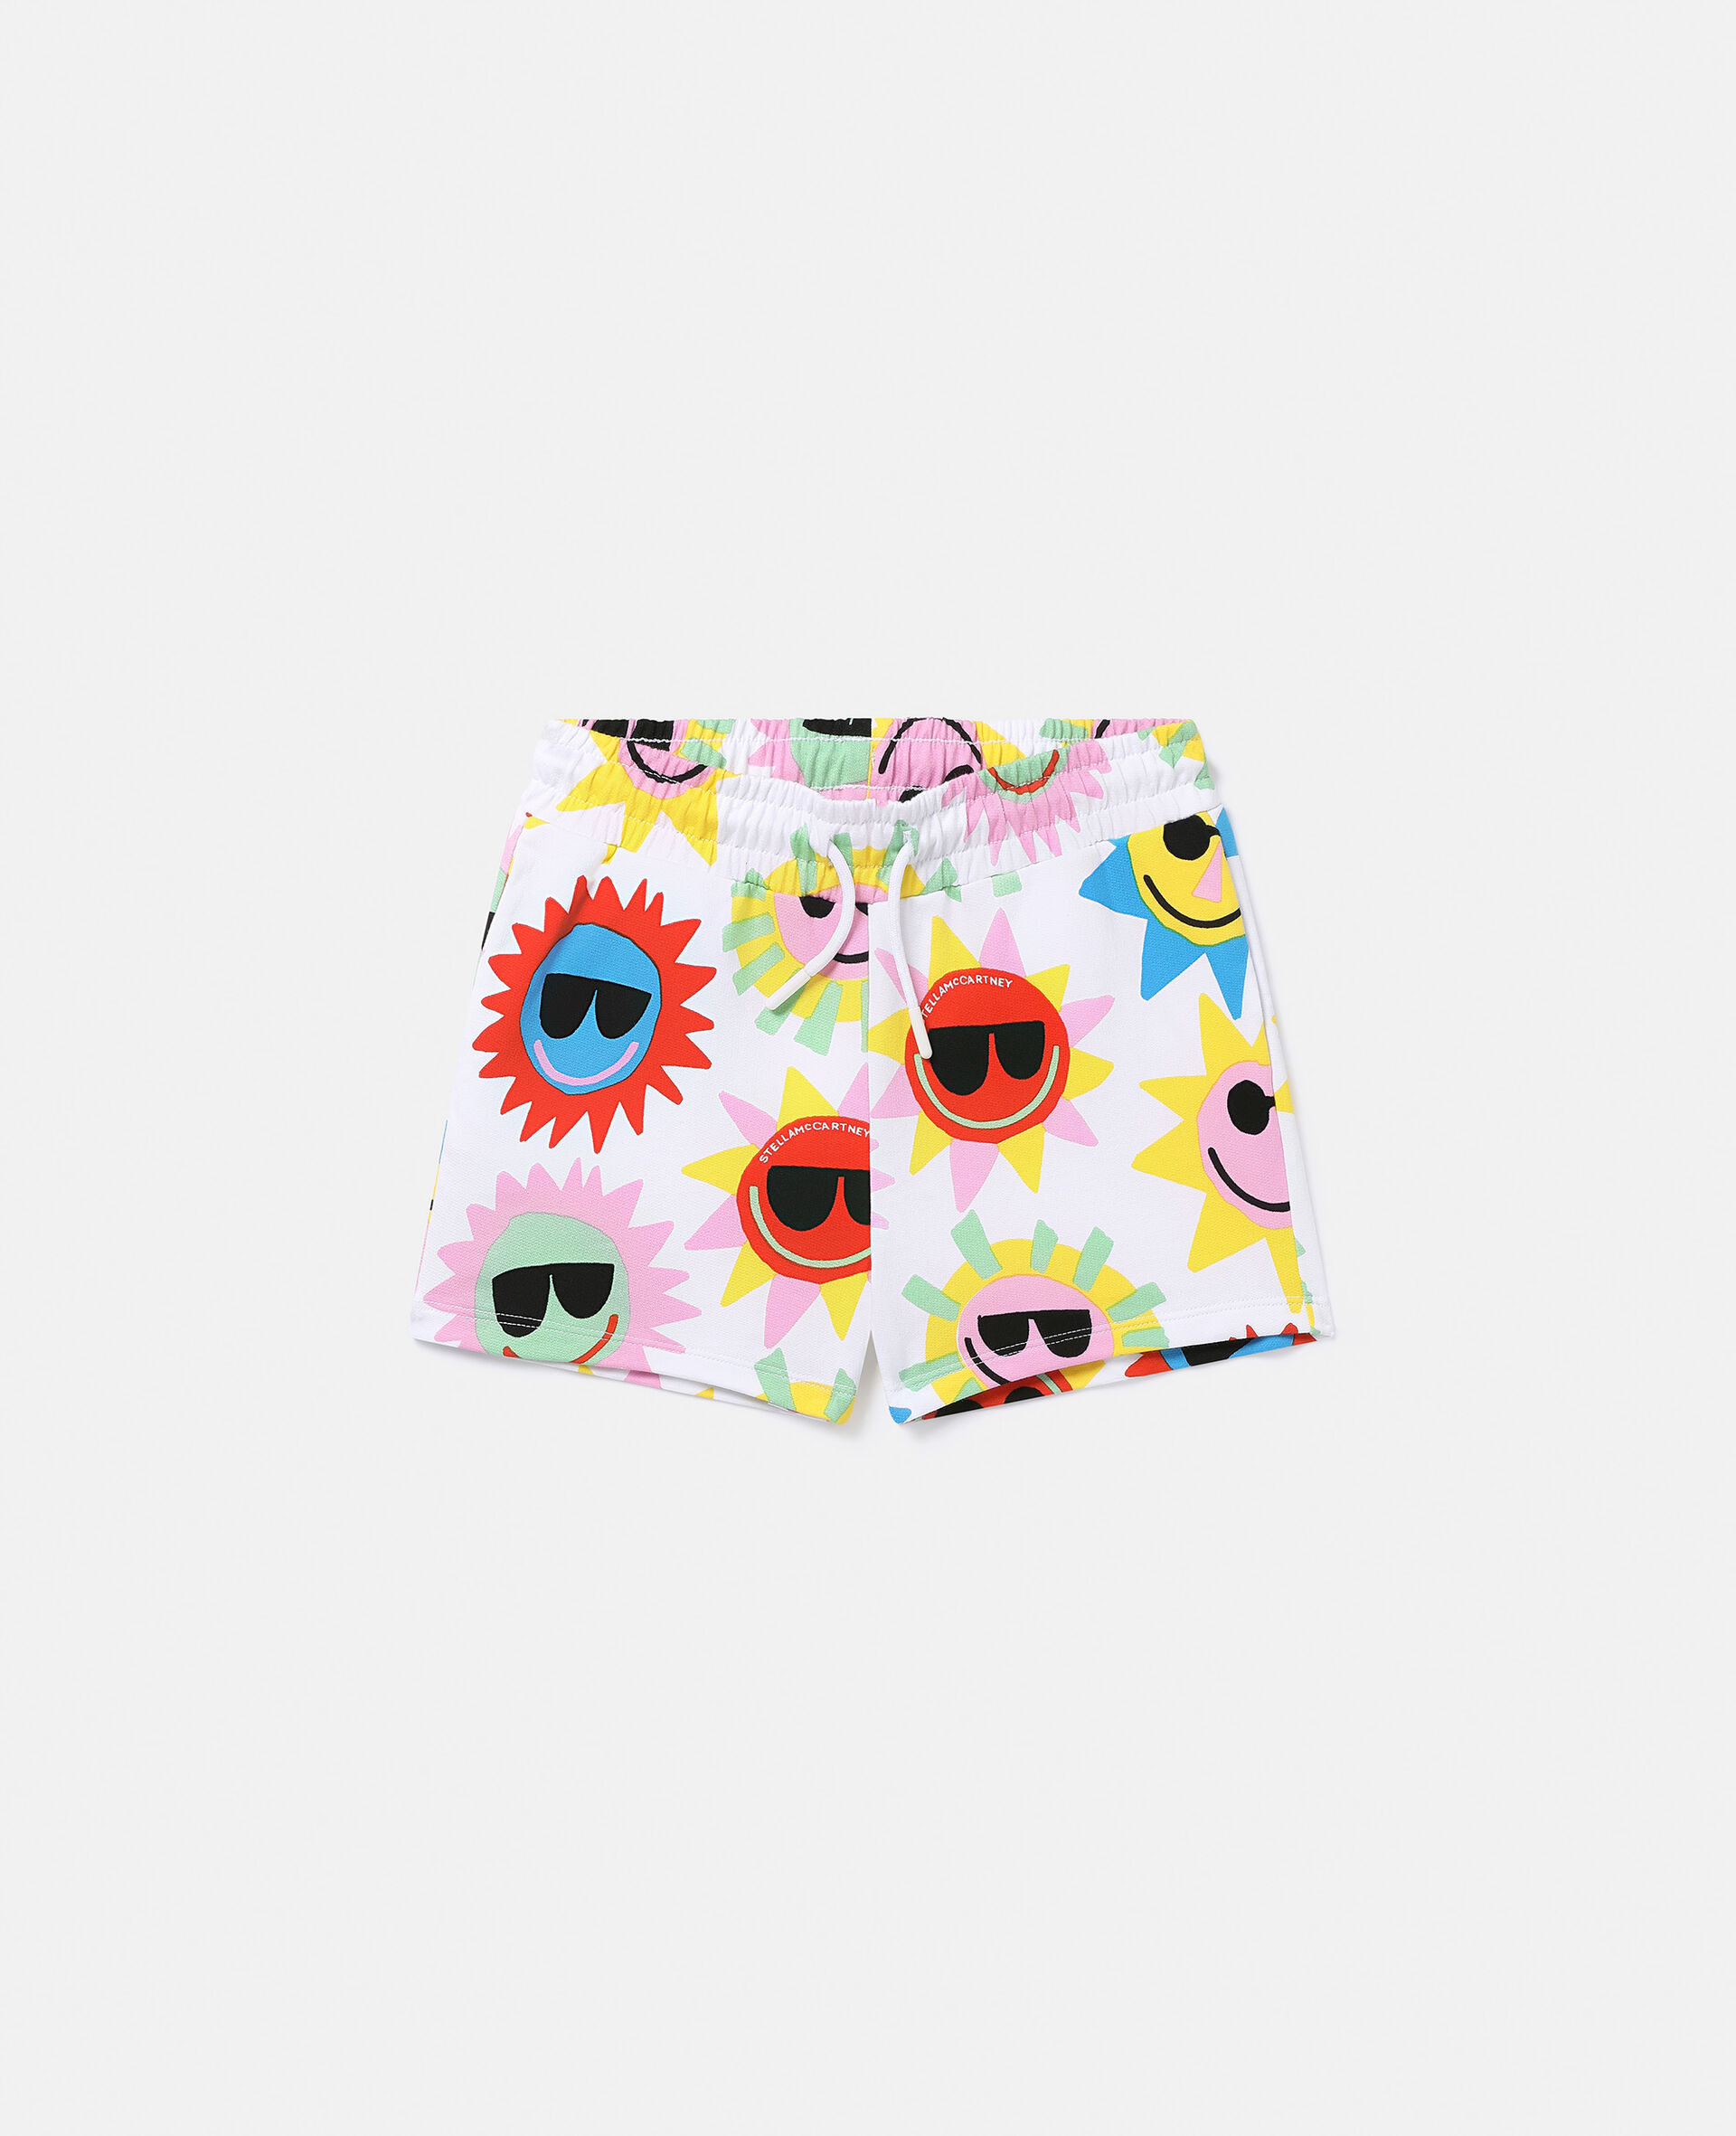 Sunshine Print Shorts-Multicolored-large image number 0